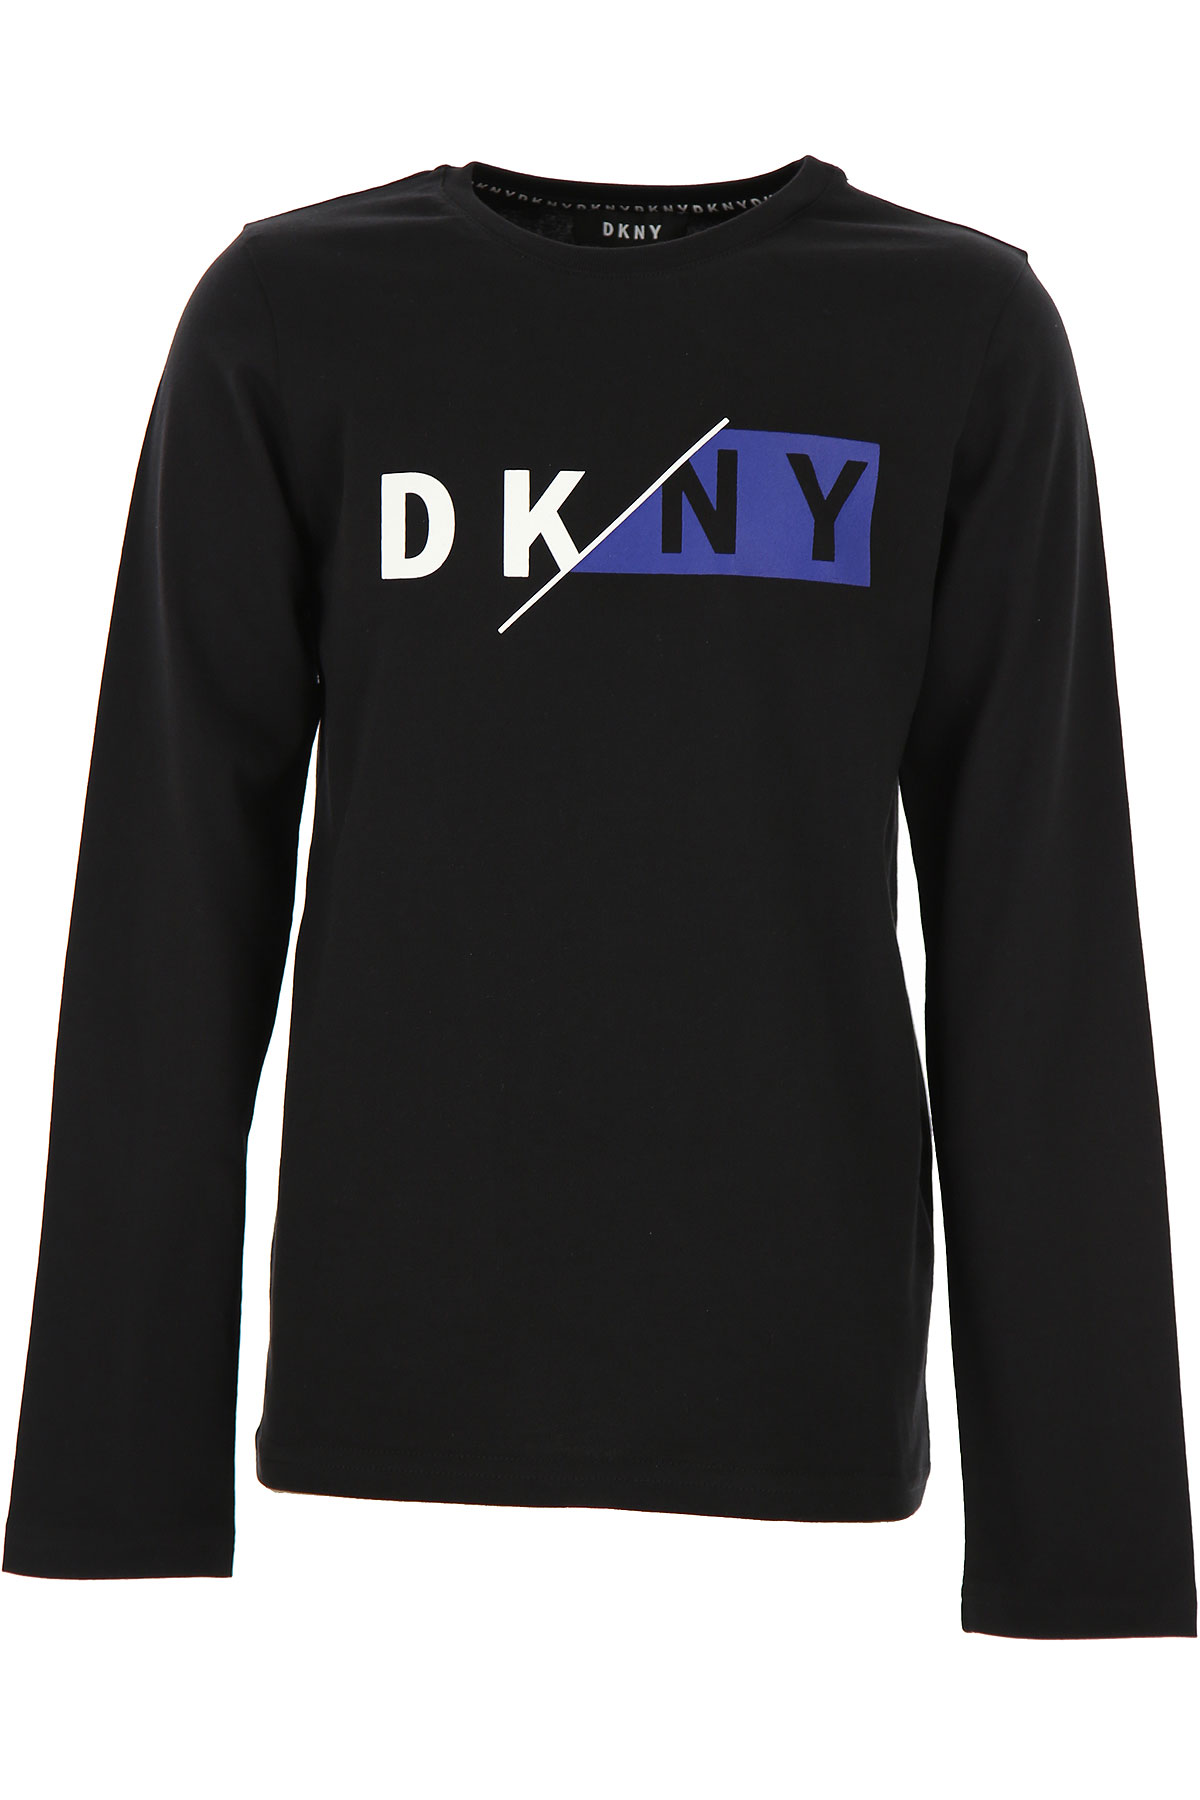 DKNY Kinder T-Shirt für Mädchen Günstig im Sale, Schwarz, Baumwolle, 2017, 10Y 12Y 14Y 16Y 8Y